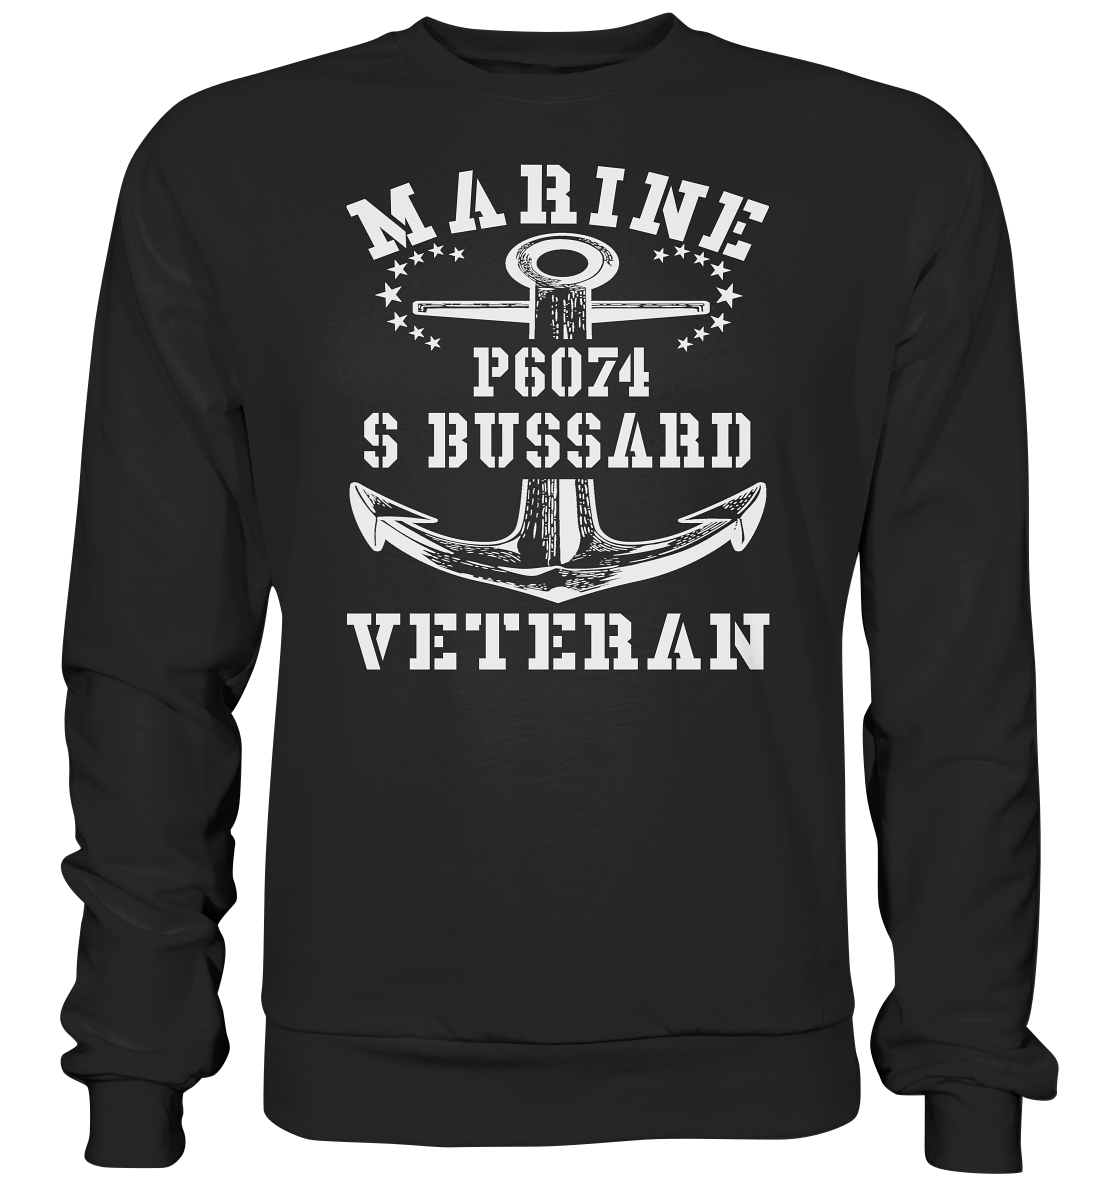 P6074 S BUSSARD Marine Veteran - Premium Sweatshirt